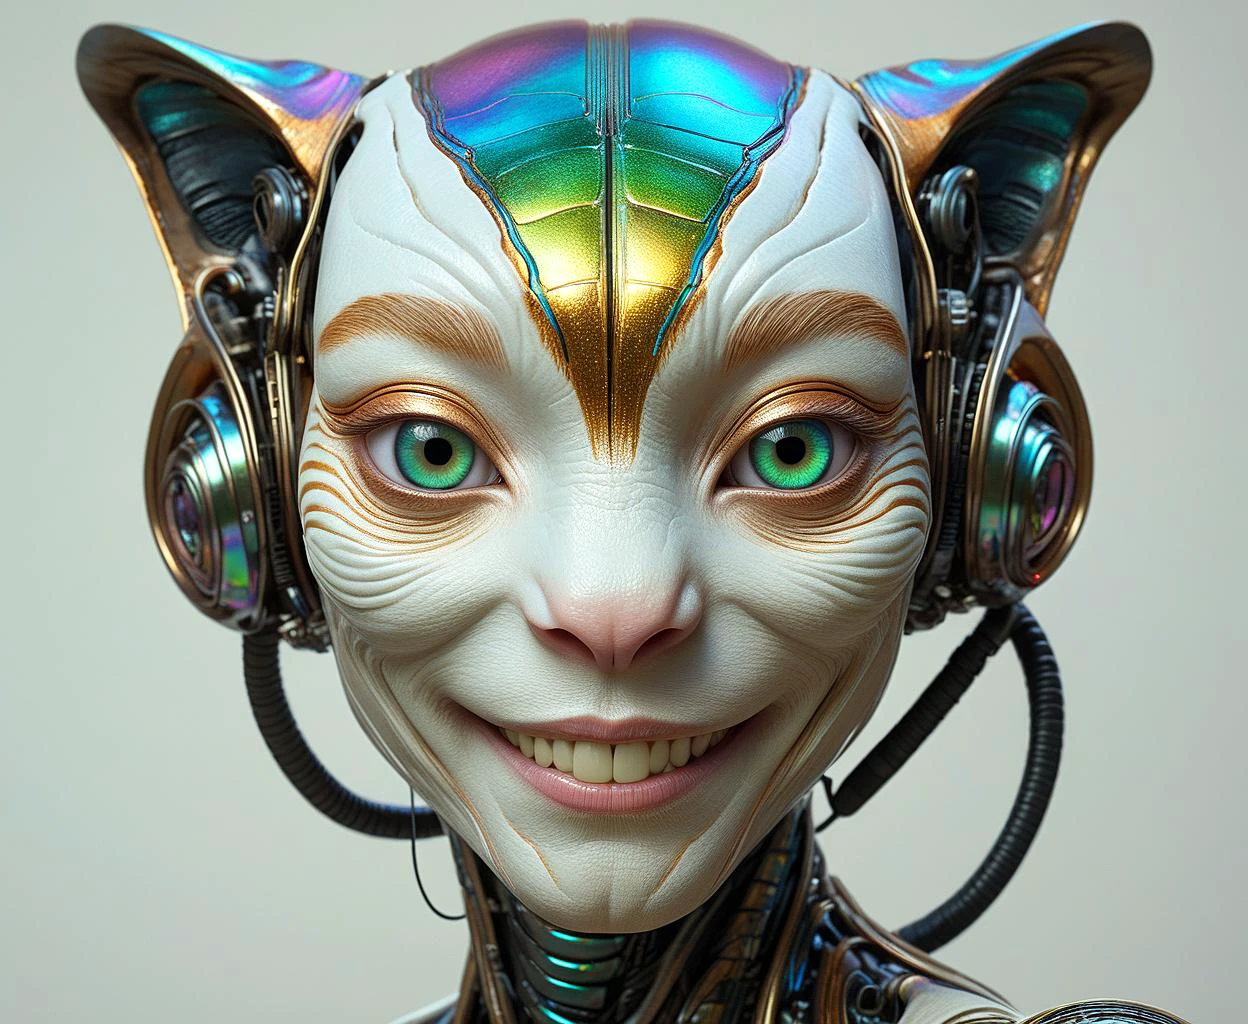 un alienígena parecido a un humano maravillosamente detallado con tecnología avanzada y características misteriosas, sonriente, piel iridiscente, Rasgos del tigre